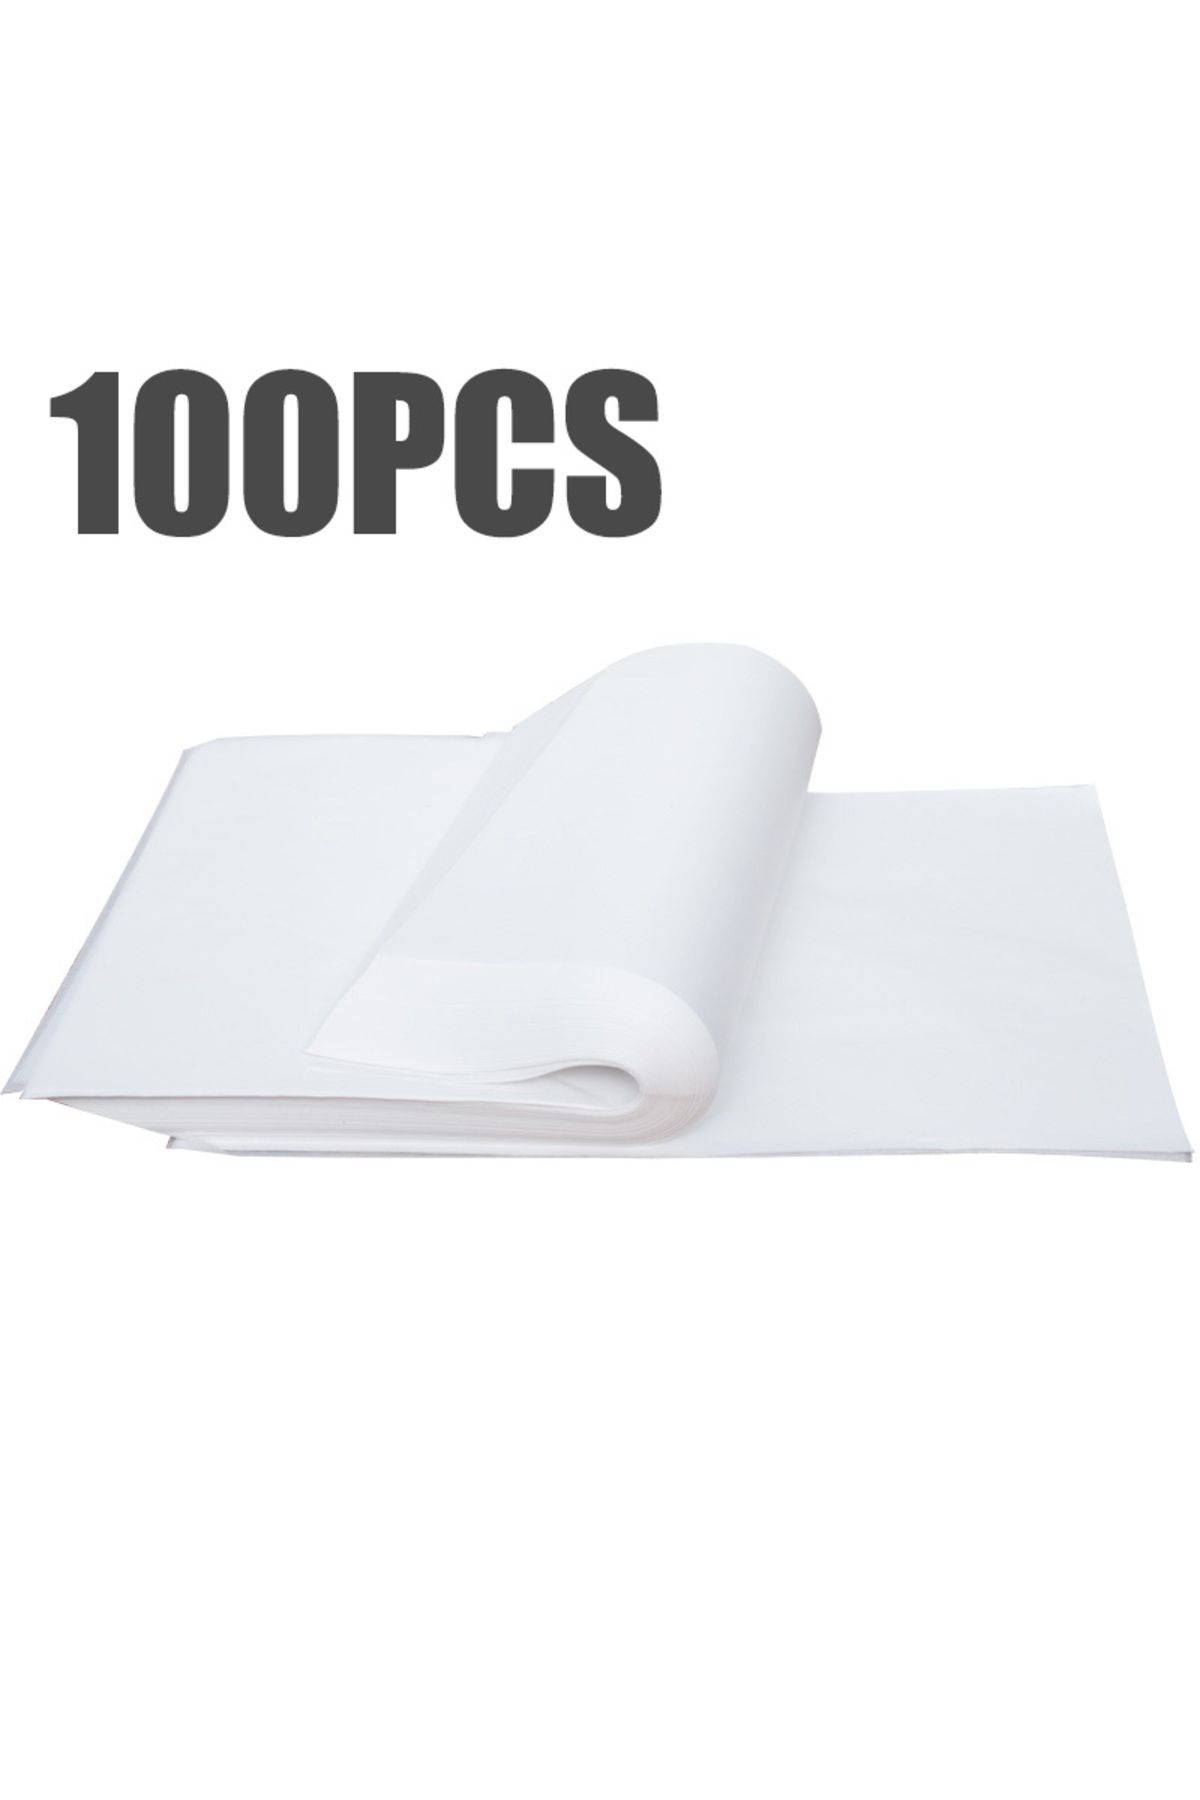 BossPack Beyaz Pelur Kâğıt (40X60 CM) Hediye Paketleme Kağıdı (100 ADET)